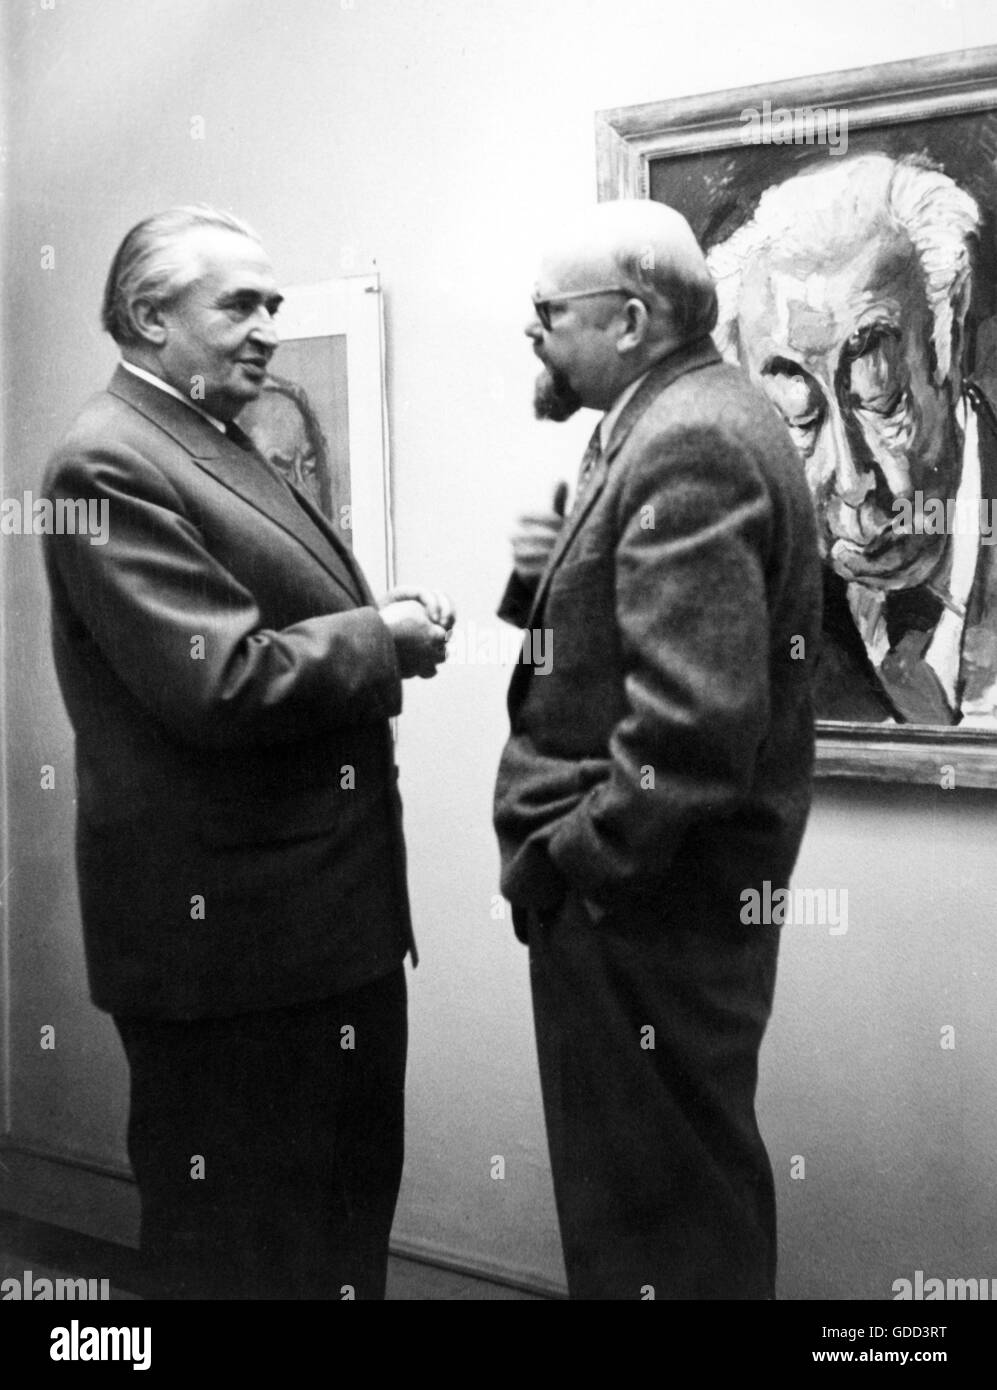 Gurlitt, Wolfgang, 15.2.1888 - 26.3.1965, German art dealer and publisher, with the painter Hans Juergen Kallmann in an art exhibition, Munich, May 1955, Stock Photo